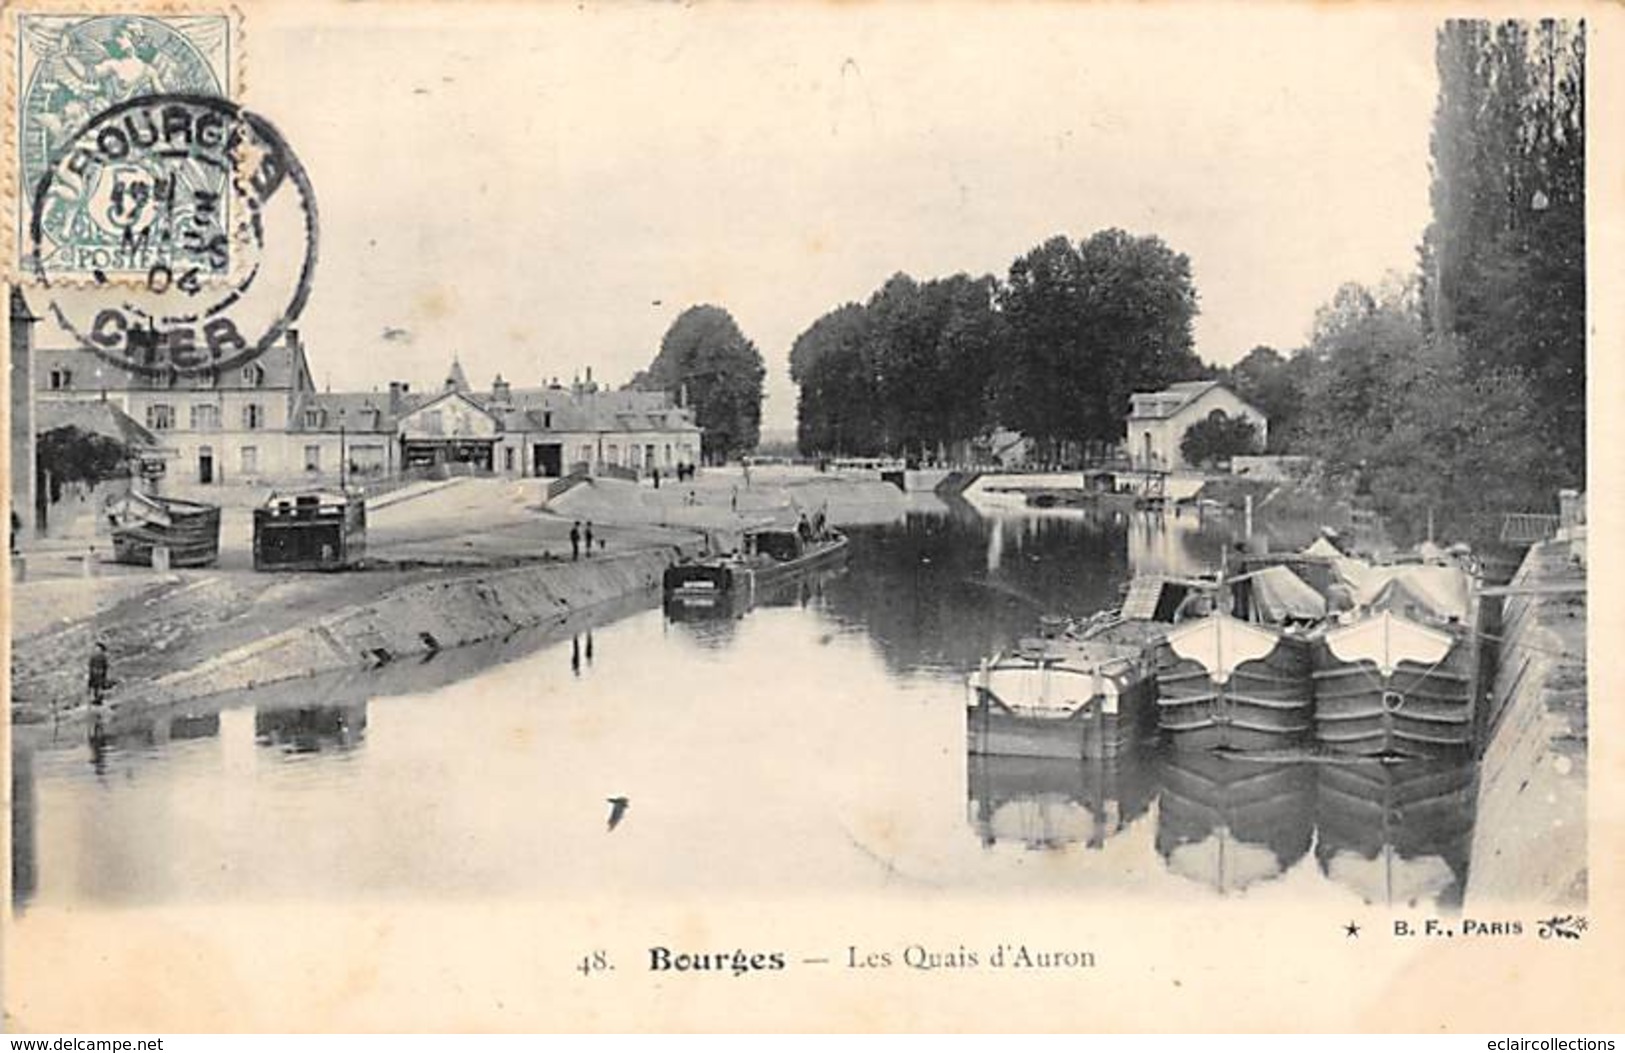 Bourges      18   Lot de 18 cartes  . Cortège historique,Commerce, Usine; Canal      (voir scan)